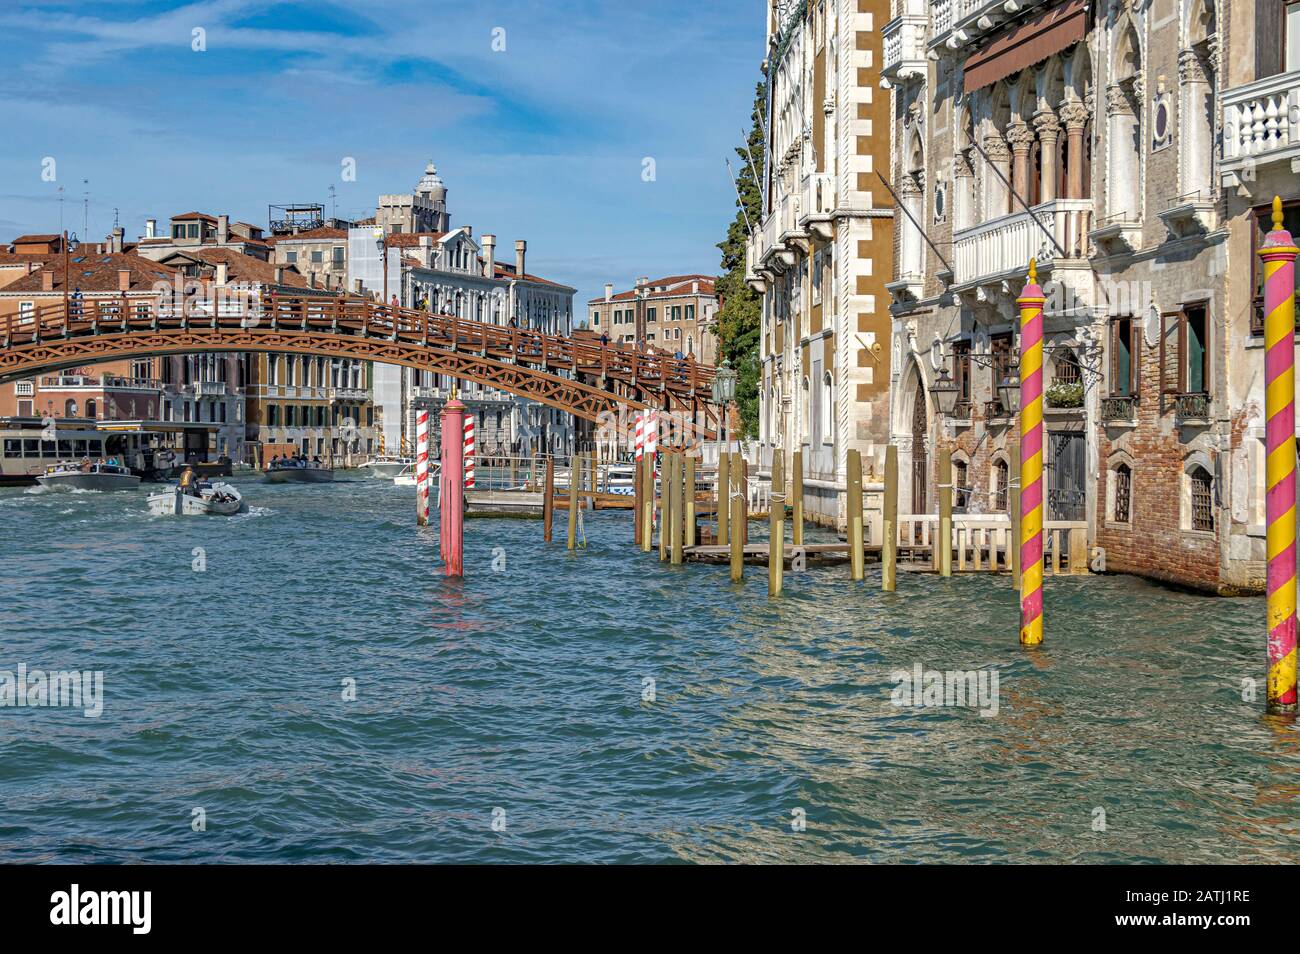 Poteaux d'amarrage en bois à rayures colorées sur le Grand Canal de Venise avec le pont Ponte dell'Accademia en arrière-plan Banque D'Images